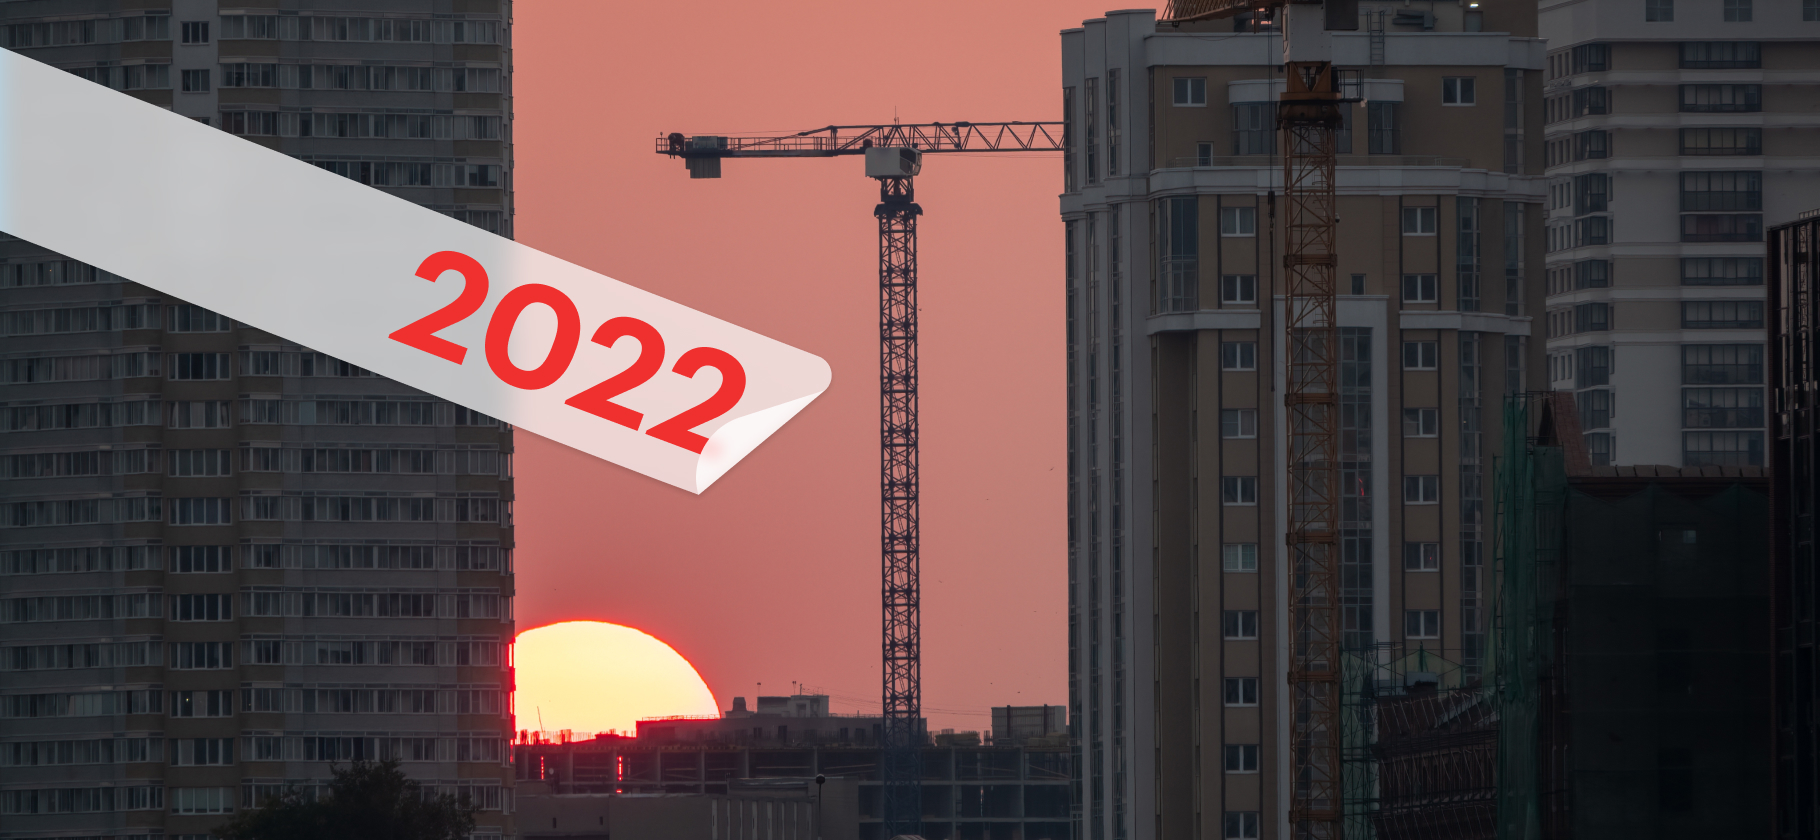 Неопределенность ичувственный выбор: каким был рынок недвижимости в 2022 году